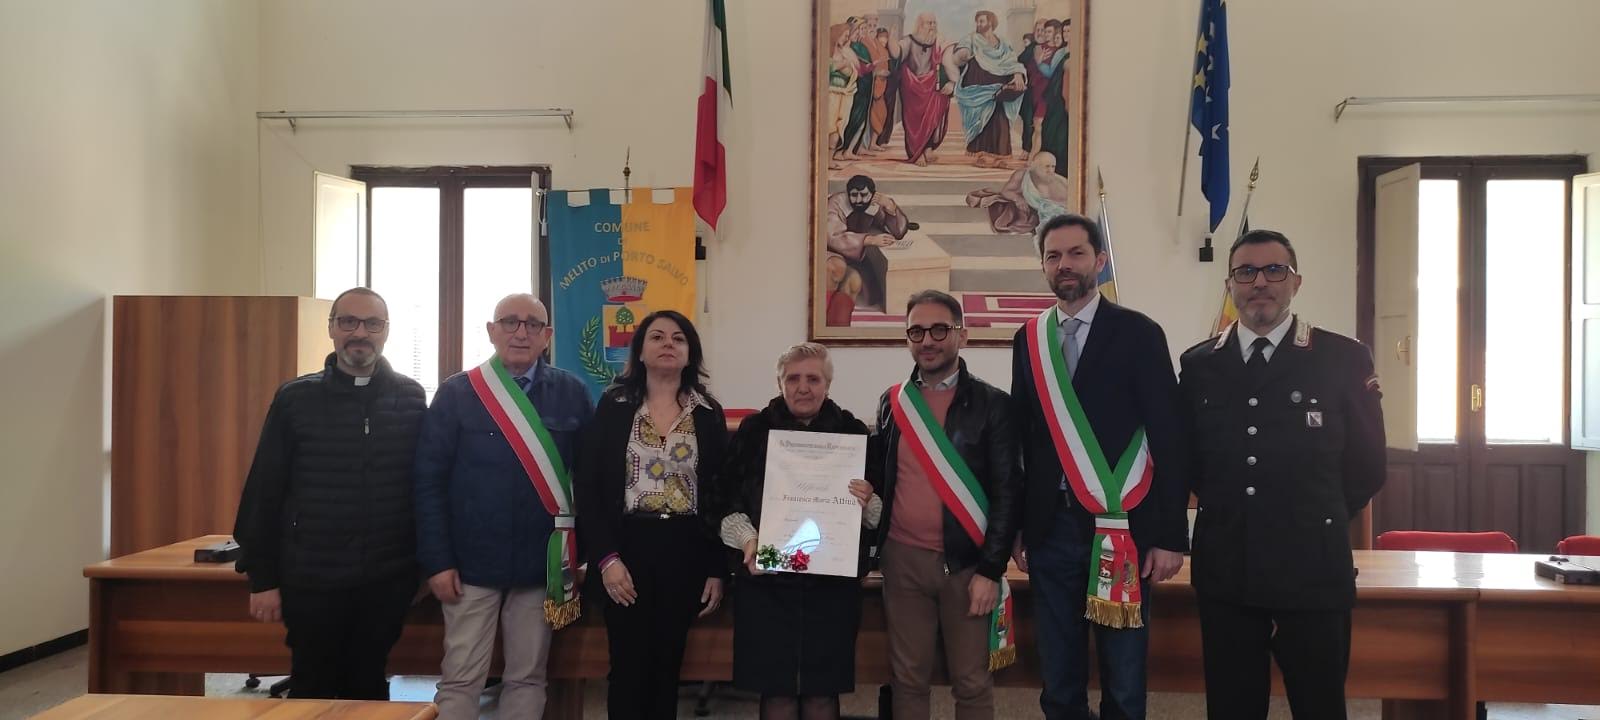 A Melito cerimonia in onore della docente Maria Francesca Attinà Ufficiale del lavoro dell’ordine “Al merito della Repubblica italiana”